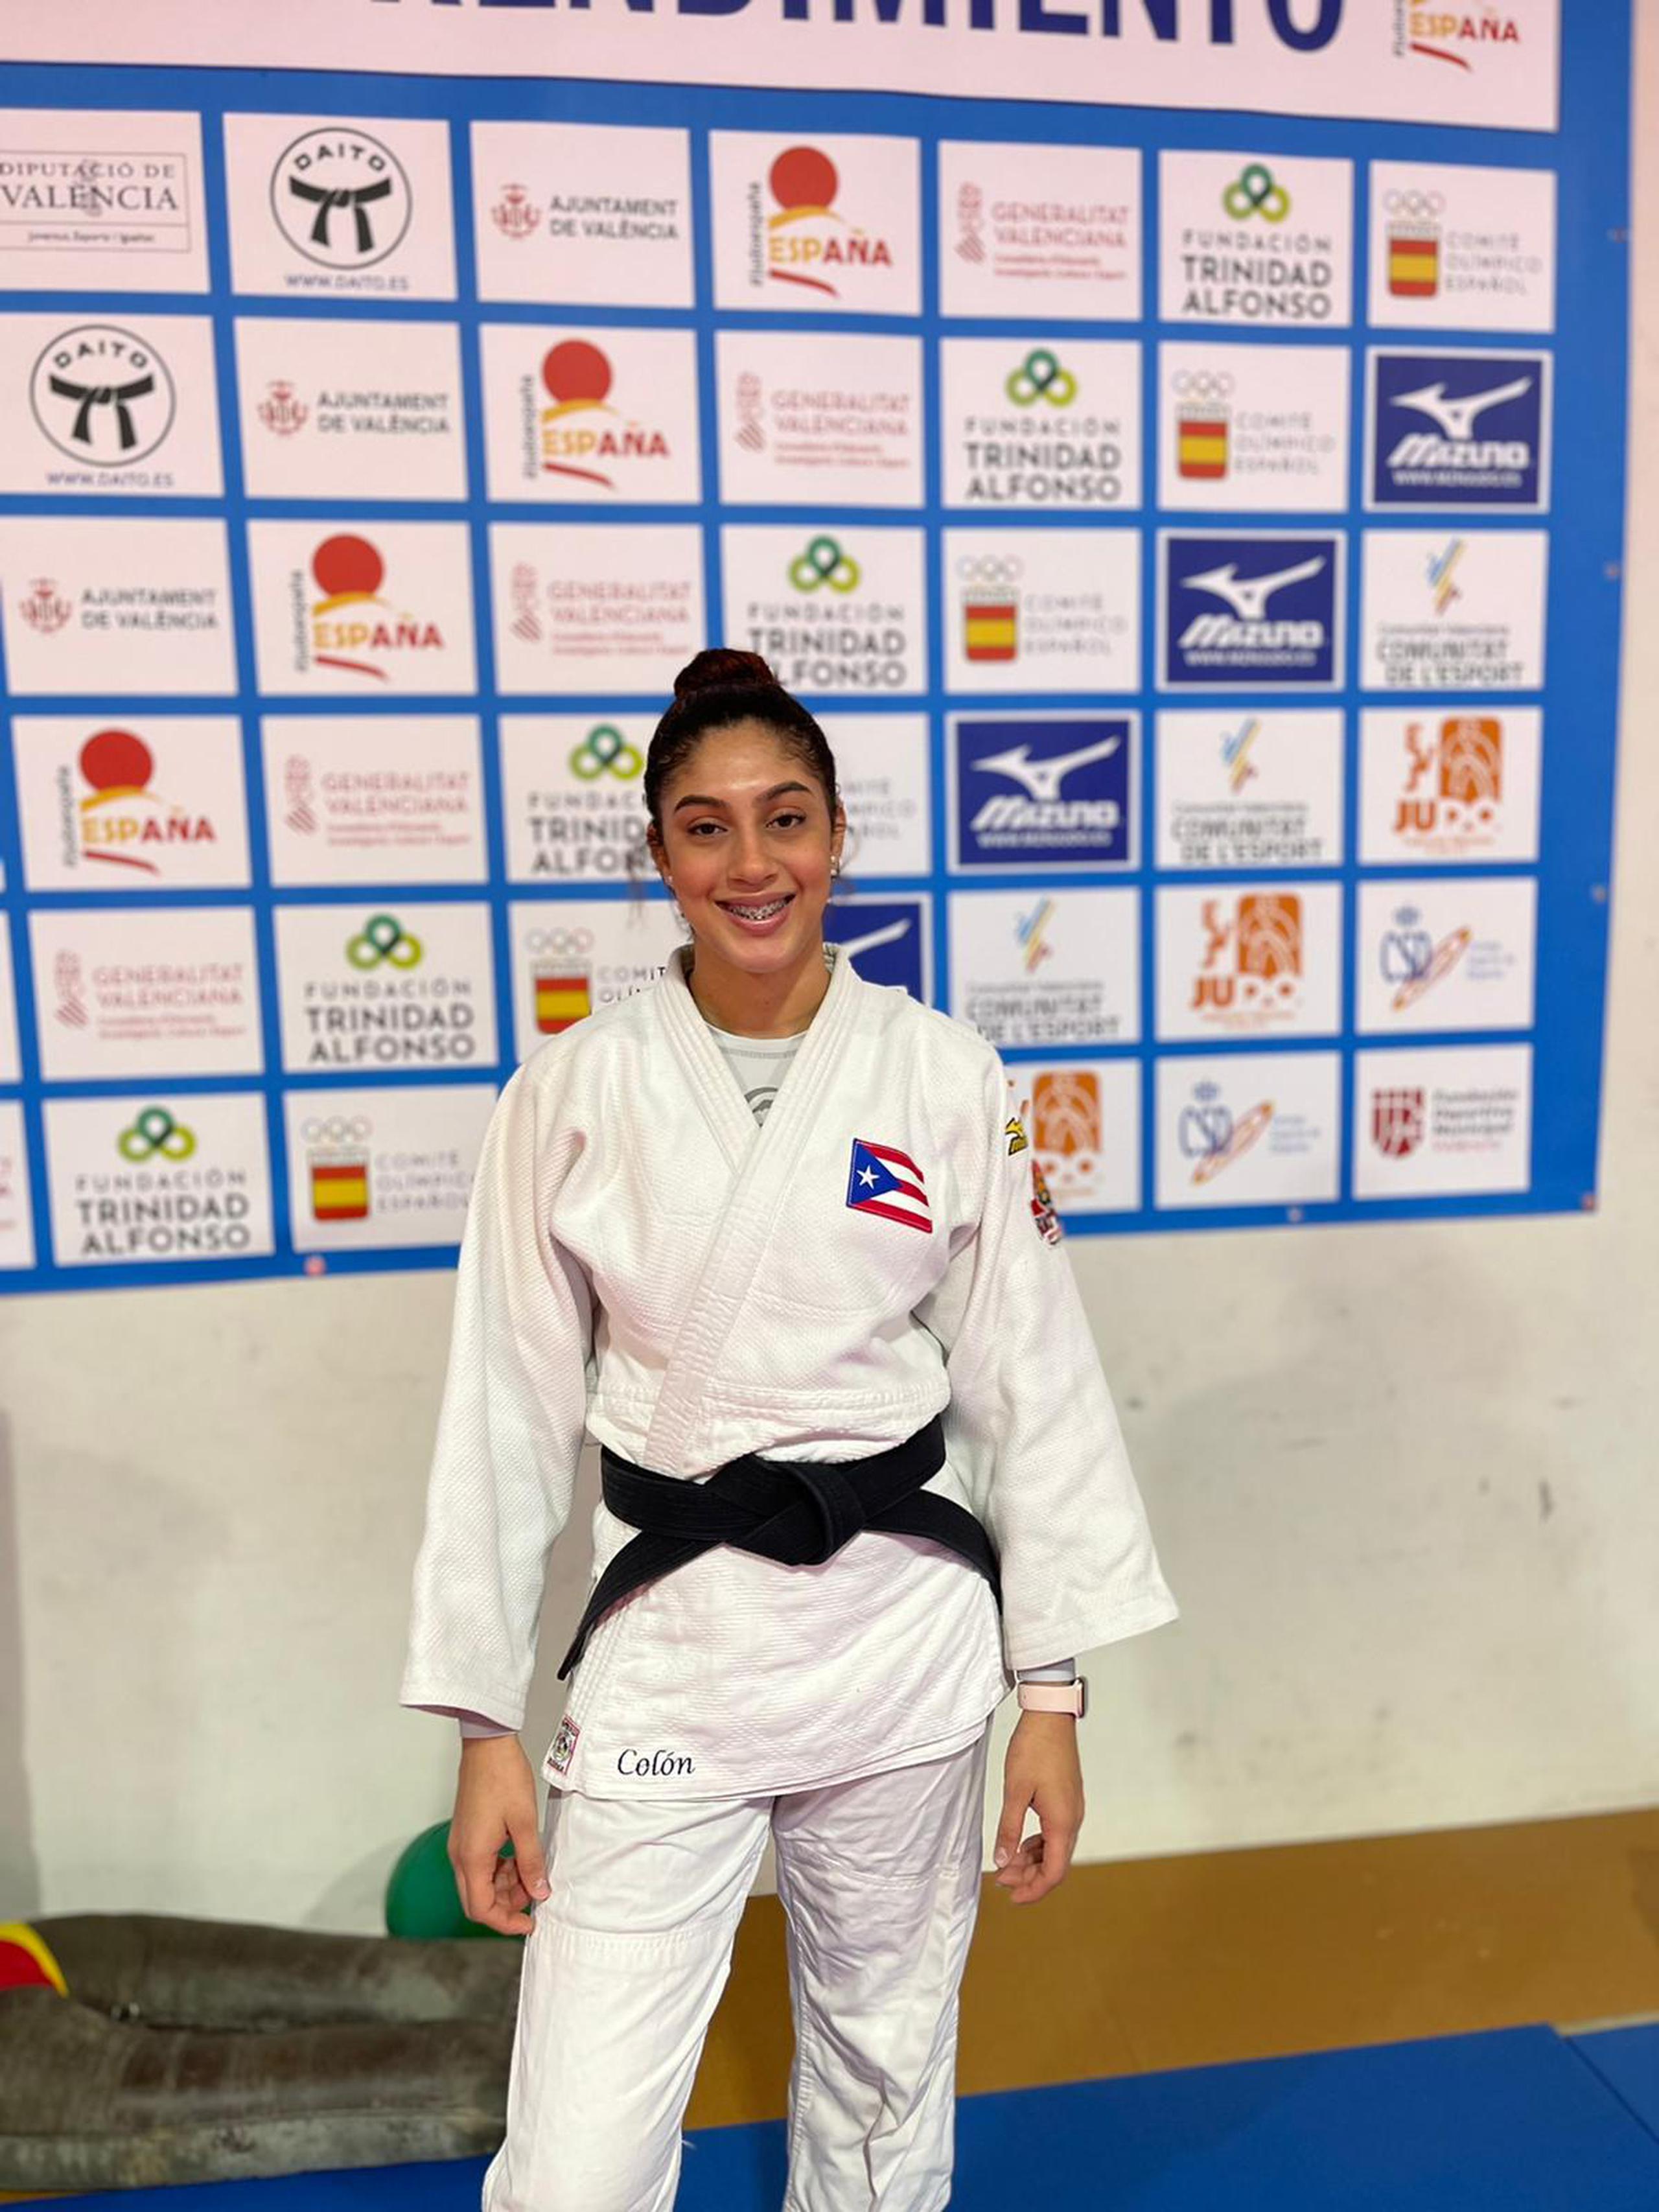 La judoca Sairy Colón es la abanderada de la delegación de Puerto Rico en Cali 2021 y atleta-estudiante de la Pontificia Universidad Católica de Ponce.